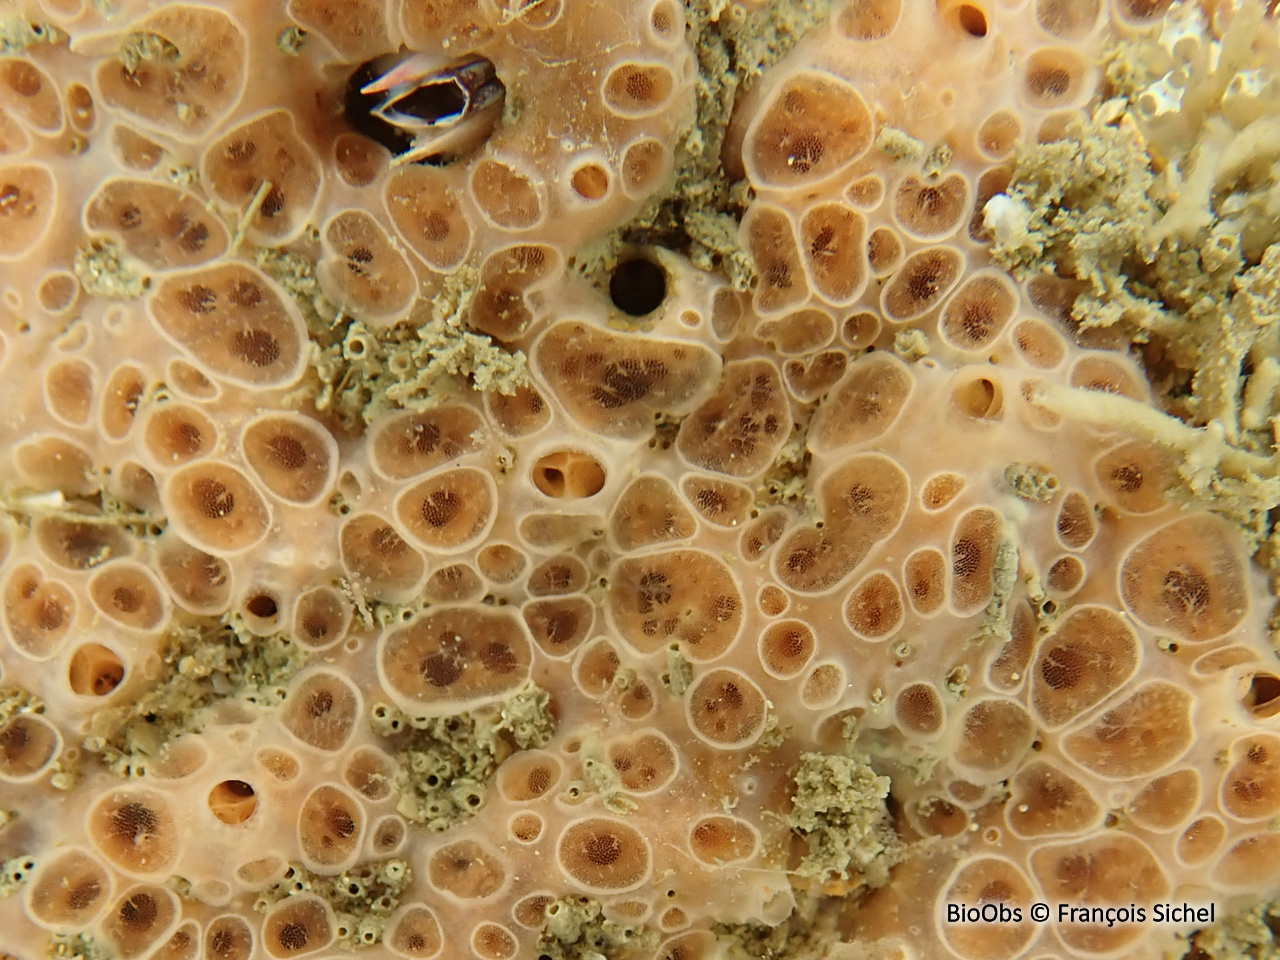 Eponge à cratères - Hemimycale columella - François Sichel - BioObs